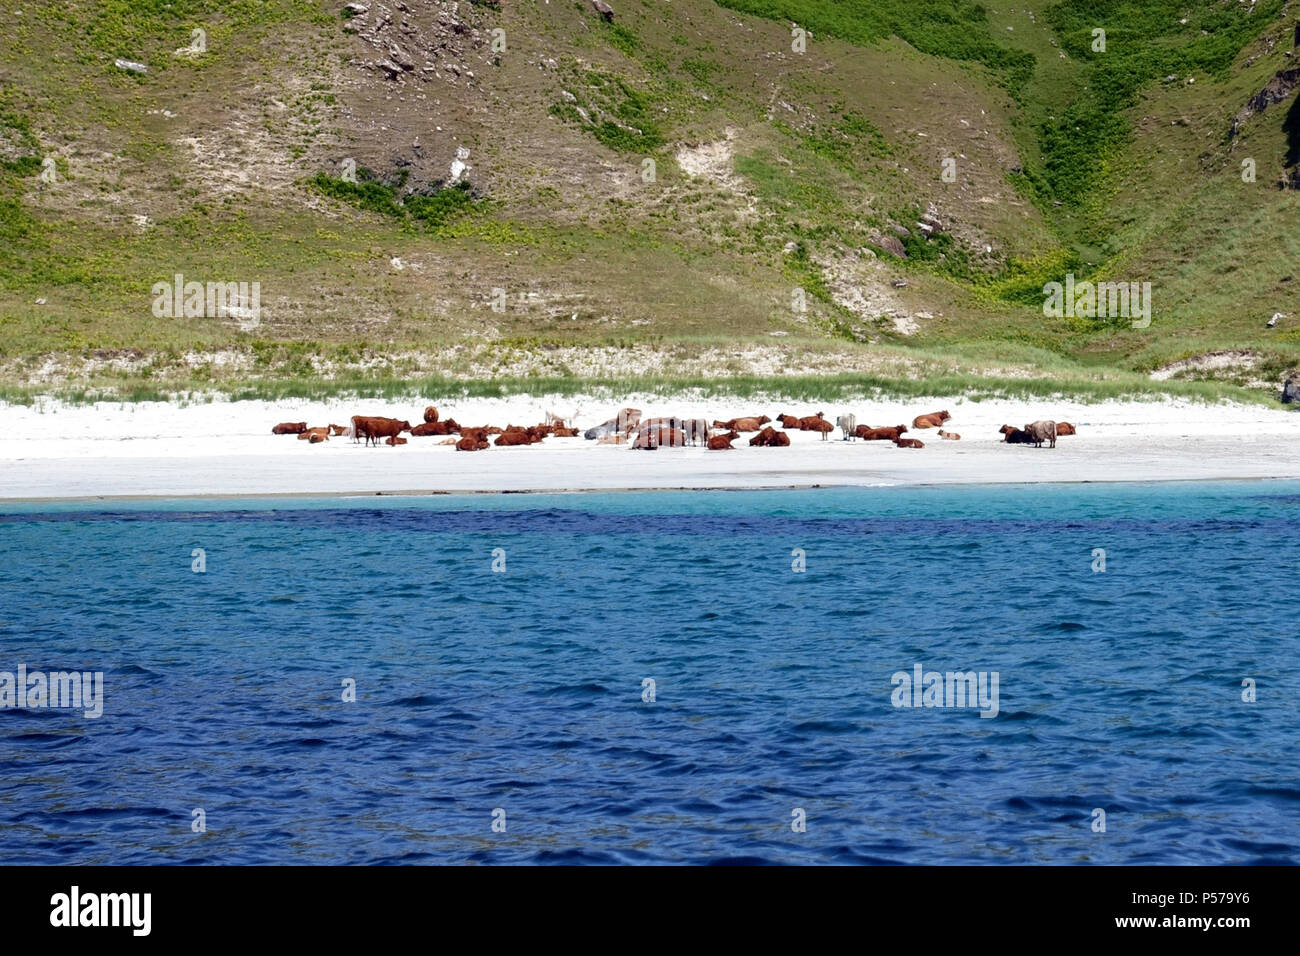 Mull, Scotland, Regno Unito. Il 25 giugno, 2018. Più mucche che persone a prendere il sole su uno dei Mull di spiagge di sabbia bianca, come le temperature continueranno ad aumentare. Credito: PictureScotland/Alamy Live News Foto Stock